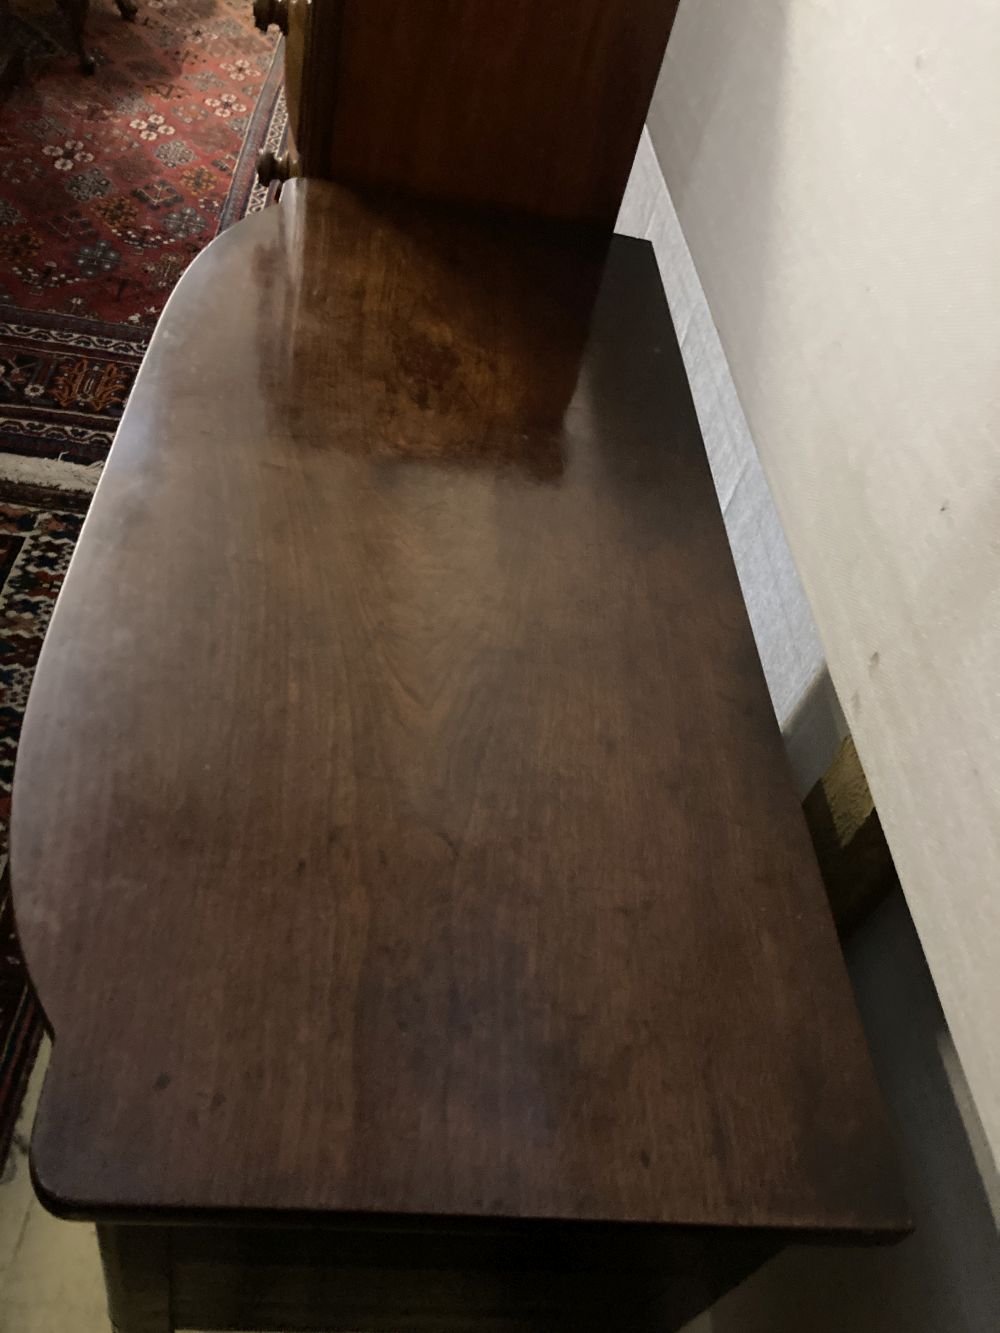 A Regency ebony inlaid mahogany bow front sideboard, width 122cm, depth 57cm, height 89cm